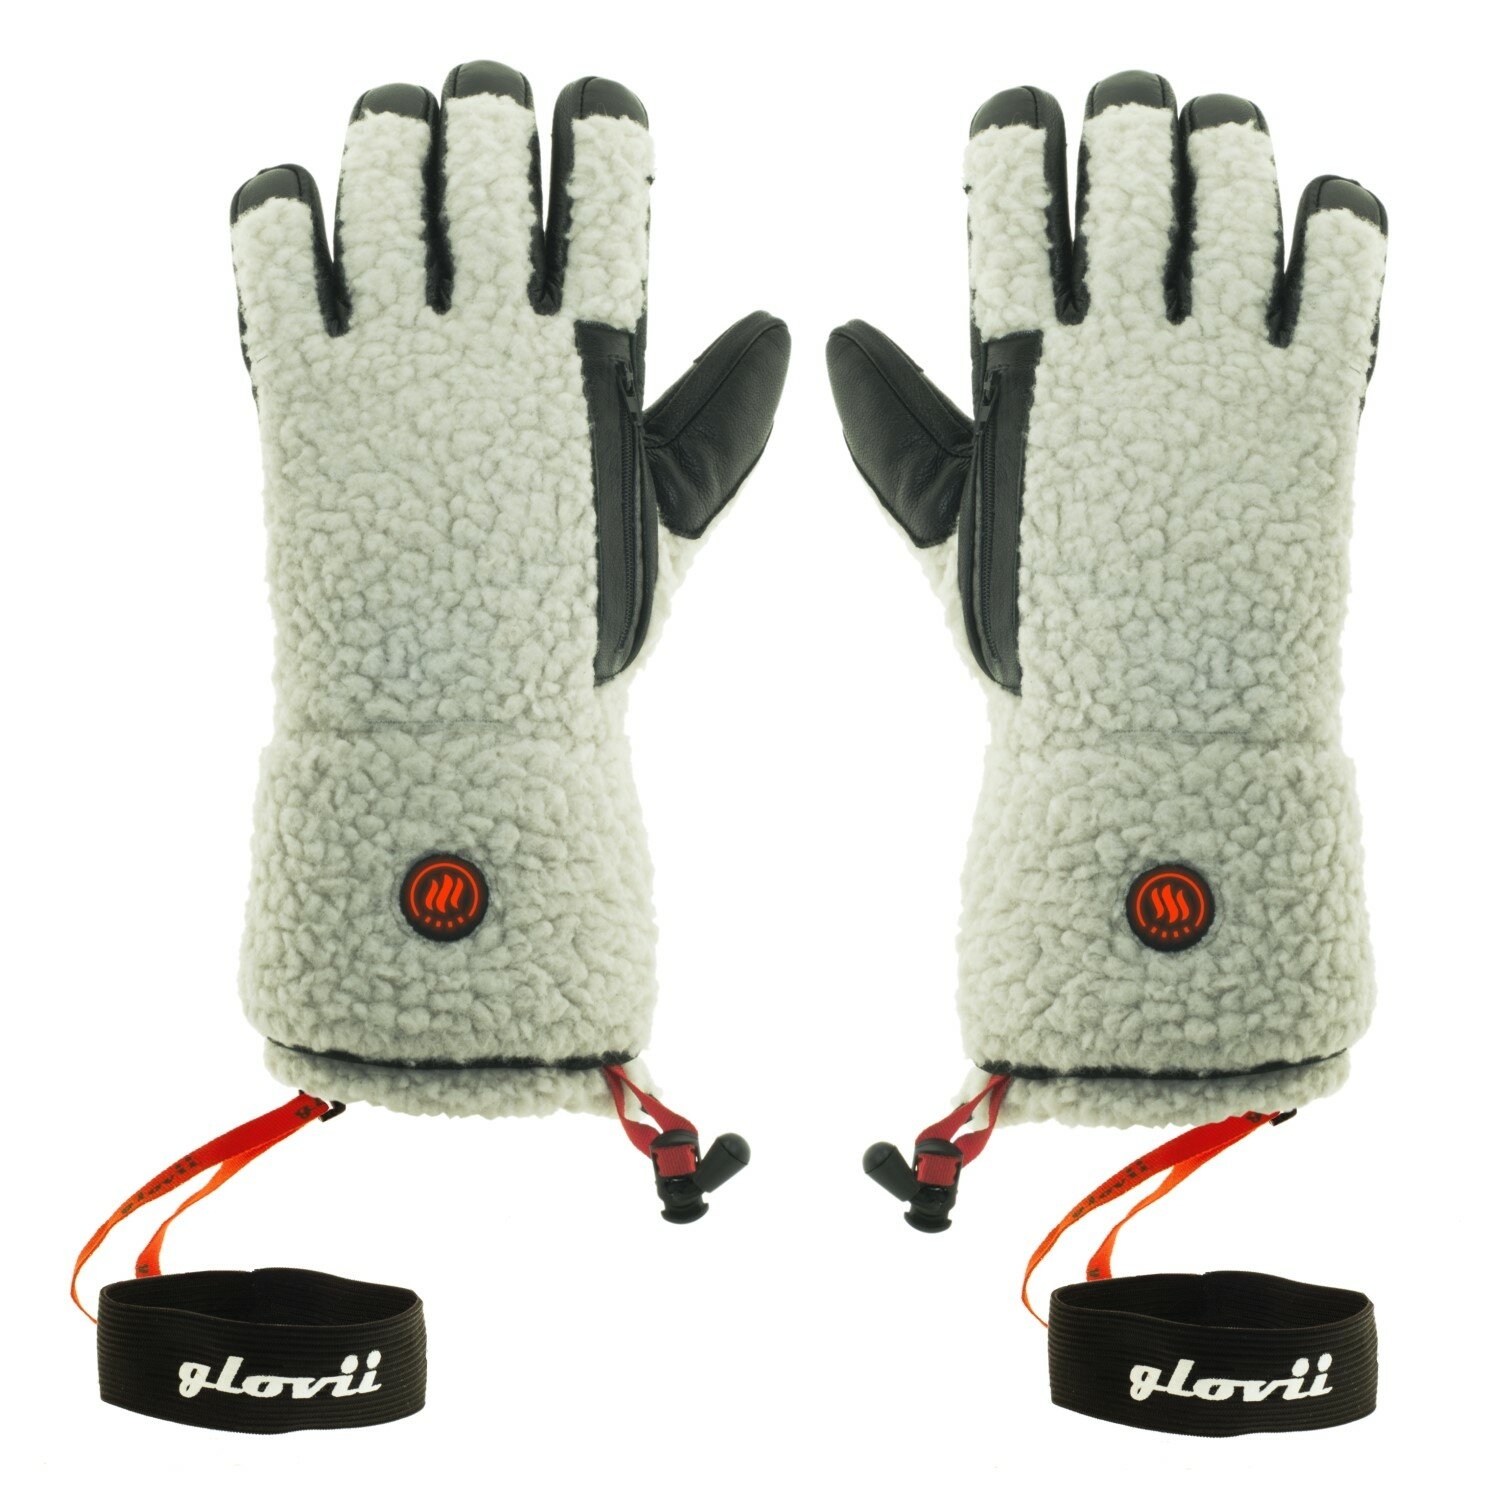 GLOVII GS3 (rozmiar L) Szaro-czarny Podgrzewane rękawiczki - niskie ceny i  opinie w Media Expert